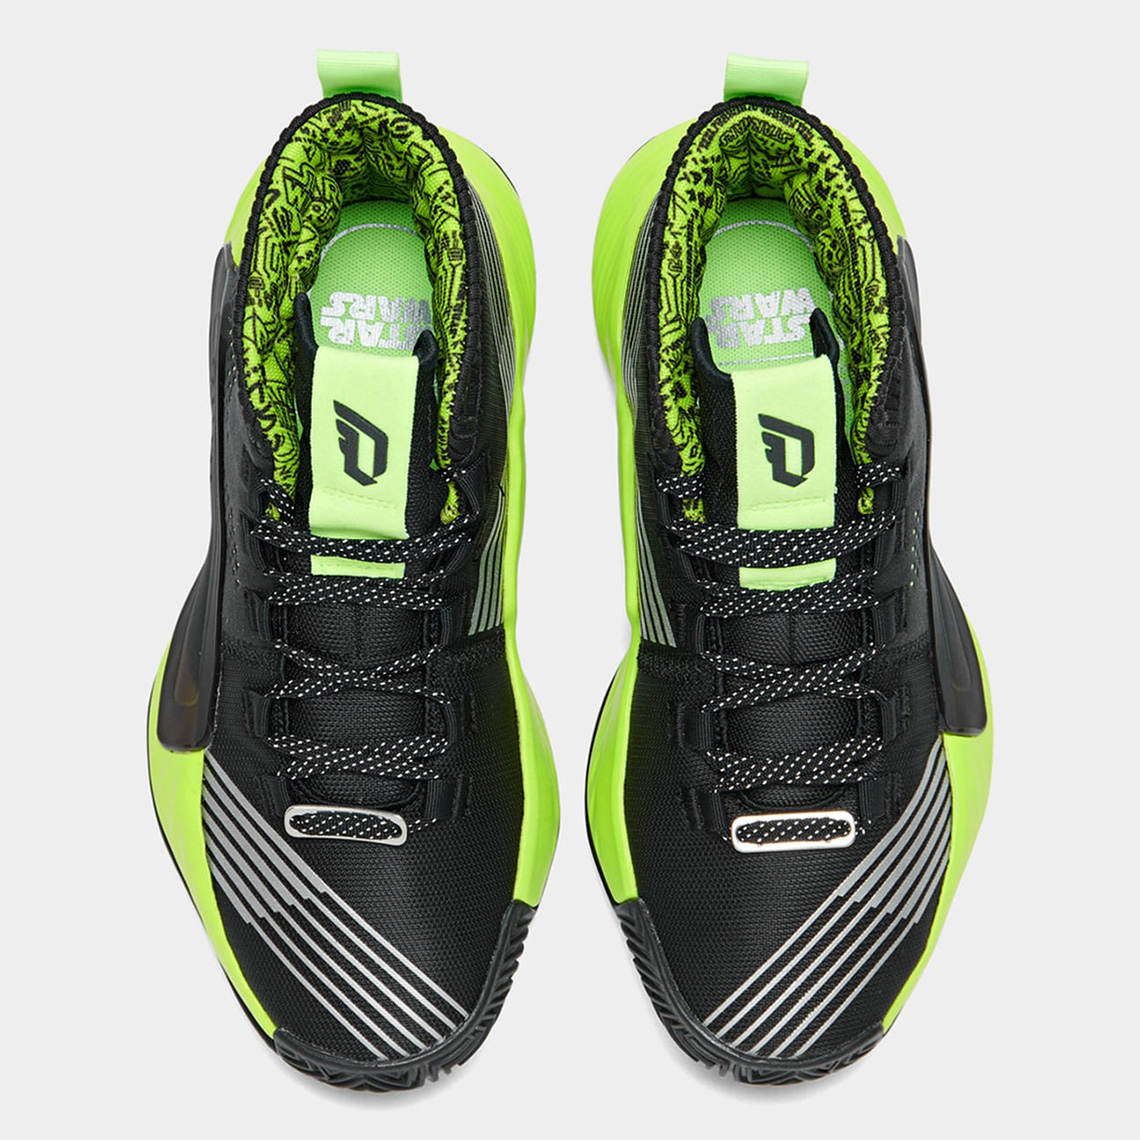 dame 5 star wars lightsaber green shoes